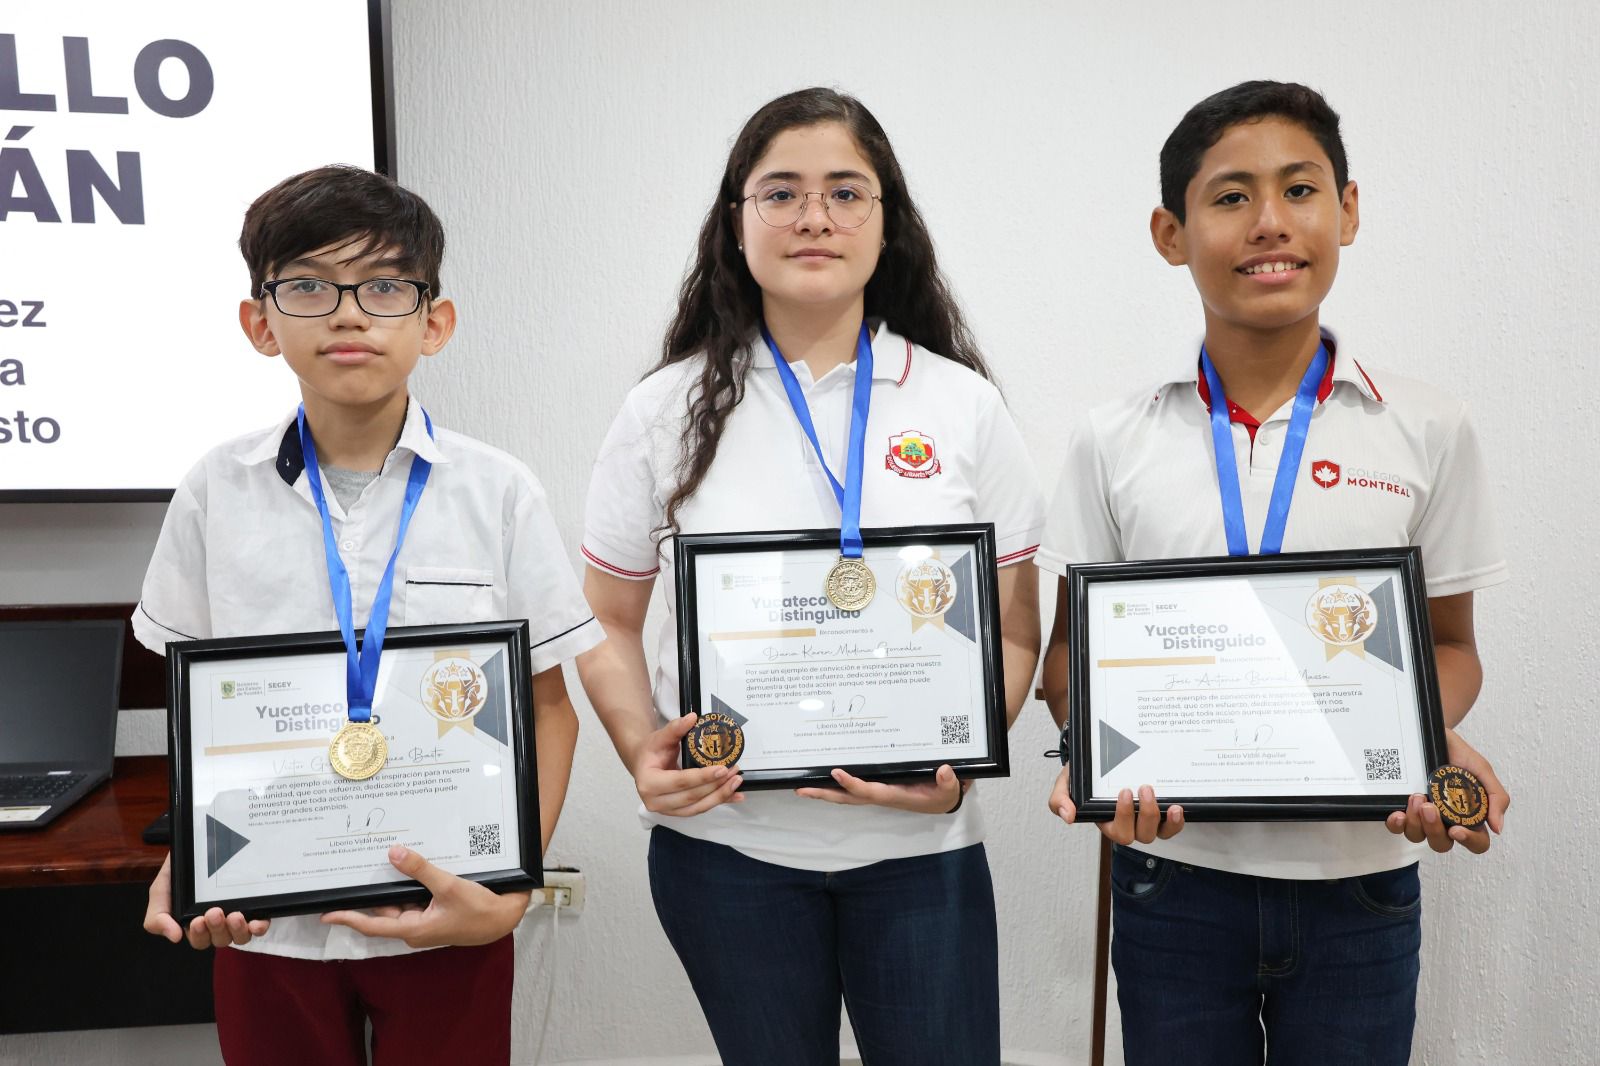 Gerardo, Dana y José, matemáticos de primaria y secundaria, son Yucatecos Distinguidos